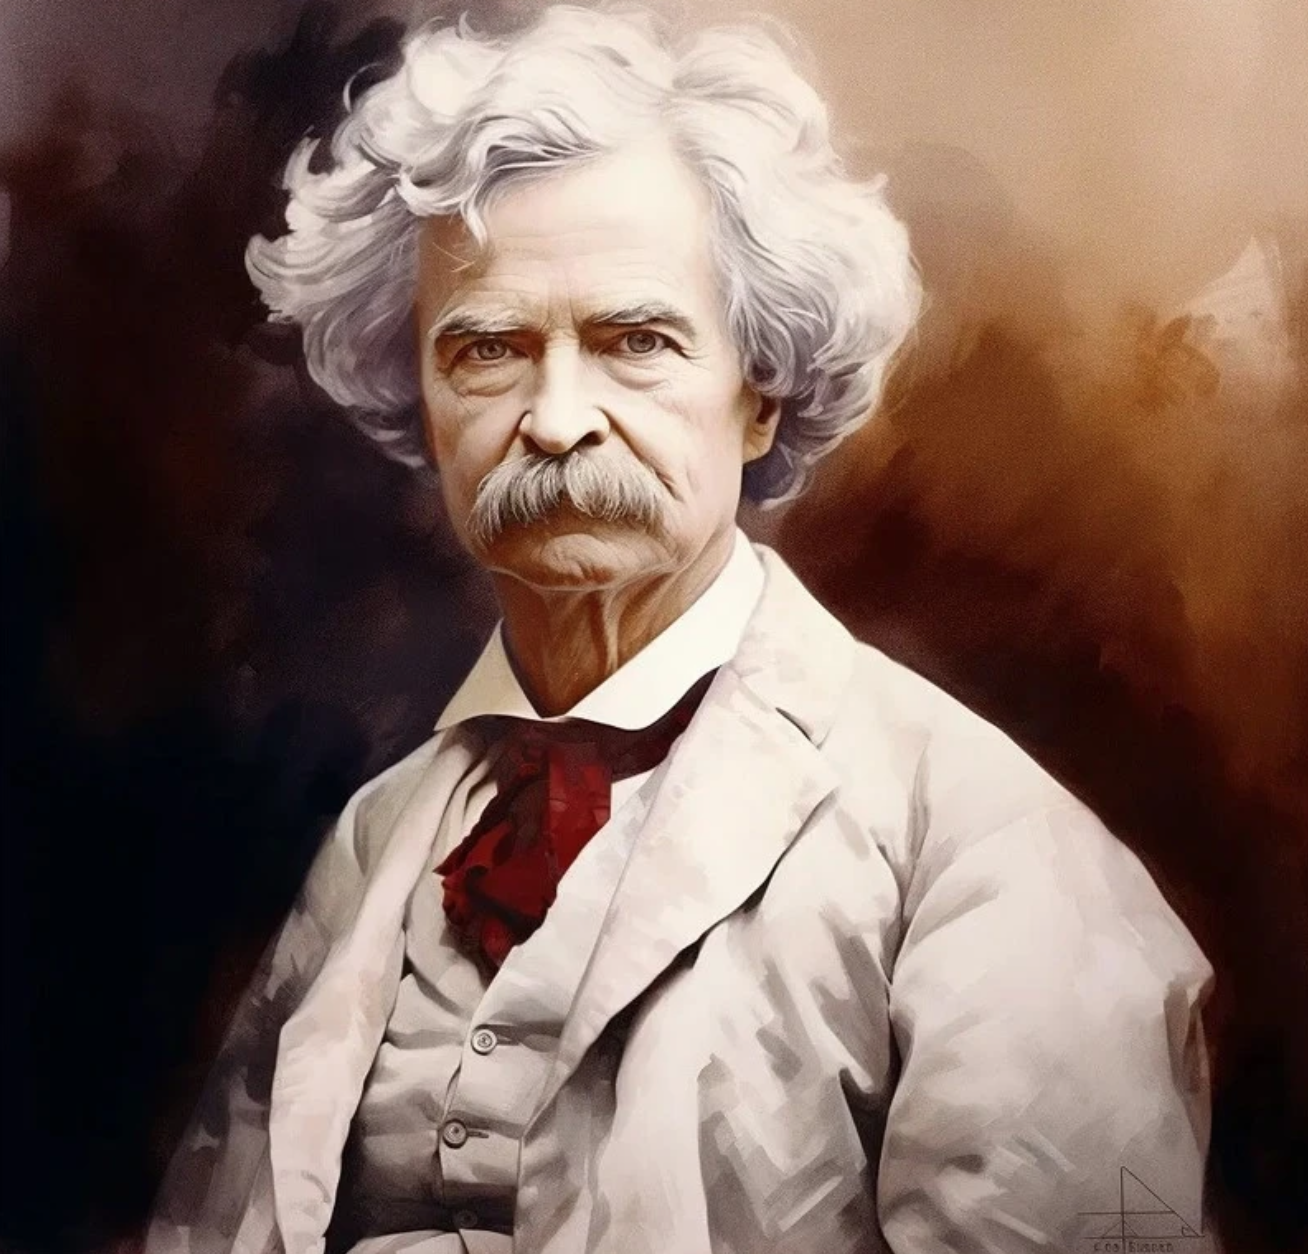 Đầu tư tài chính - Niềm đam mê khiến đại văn hào Mark Twain lâm bước đường cùng